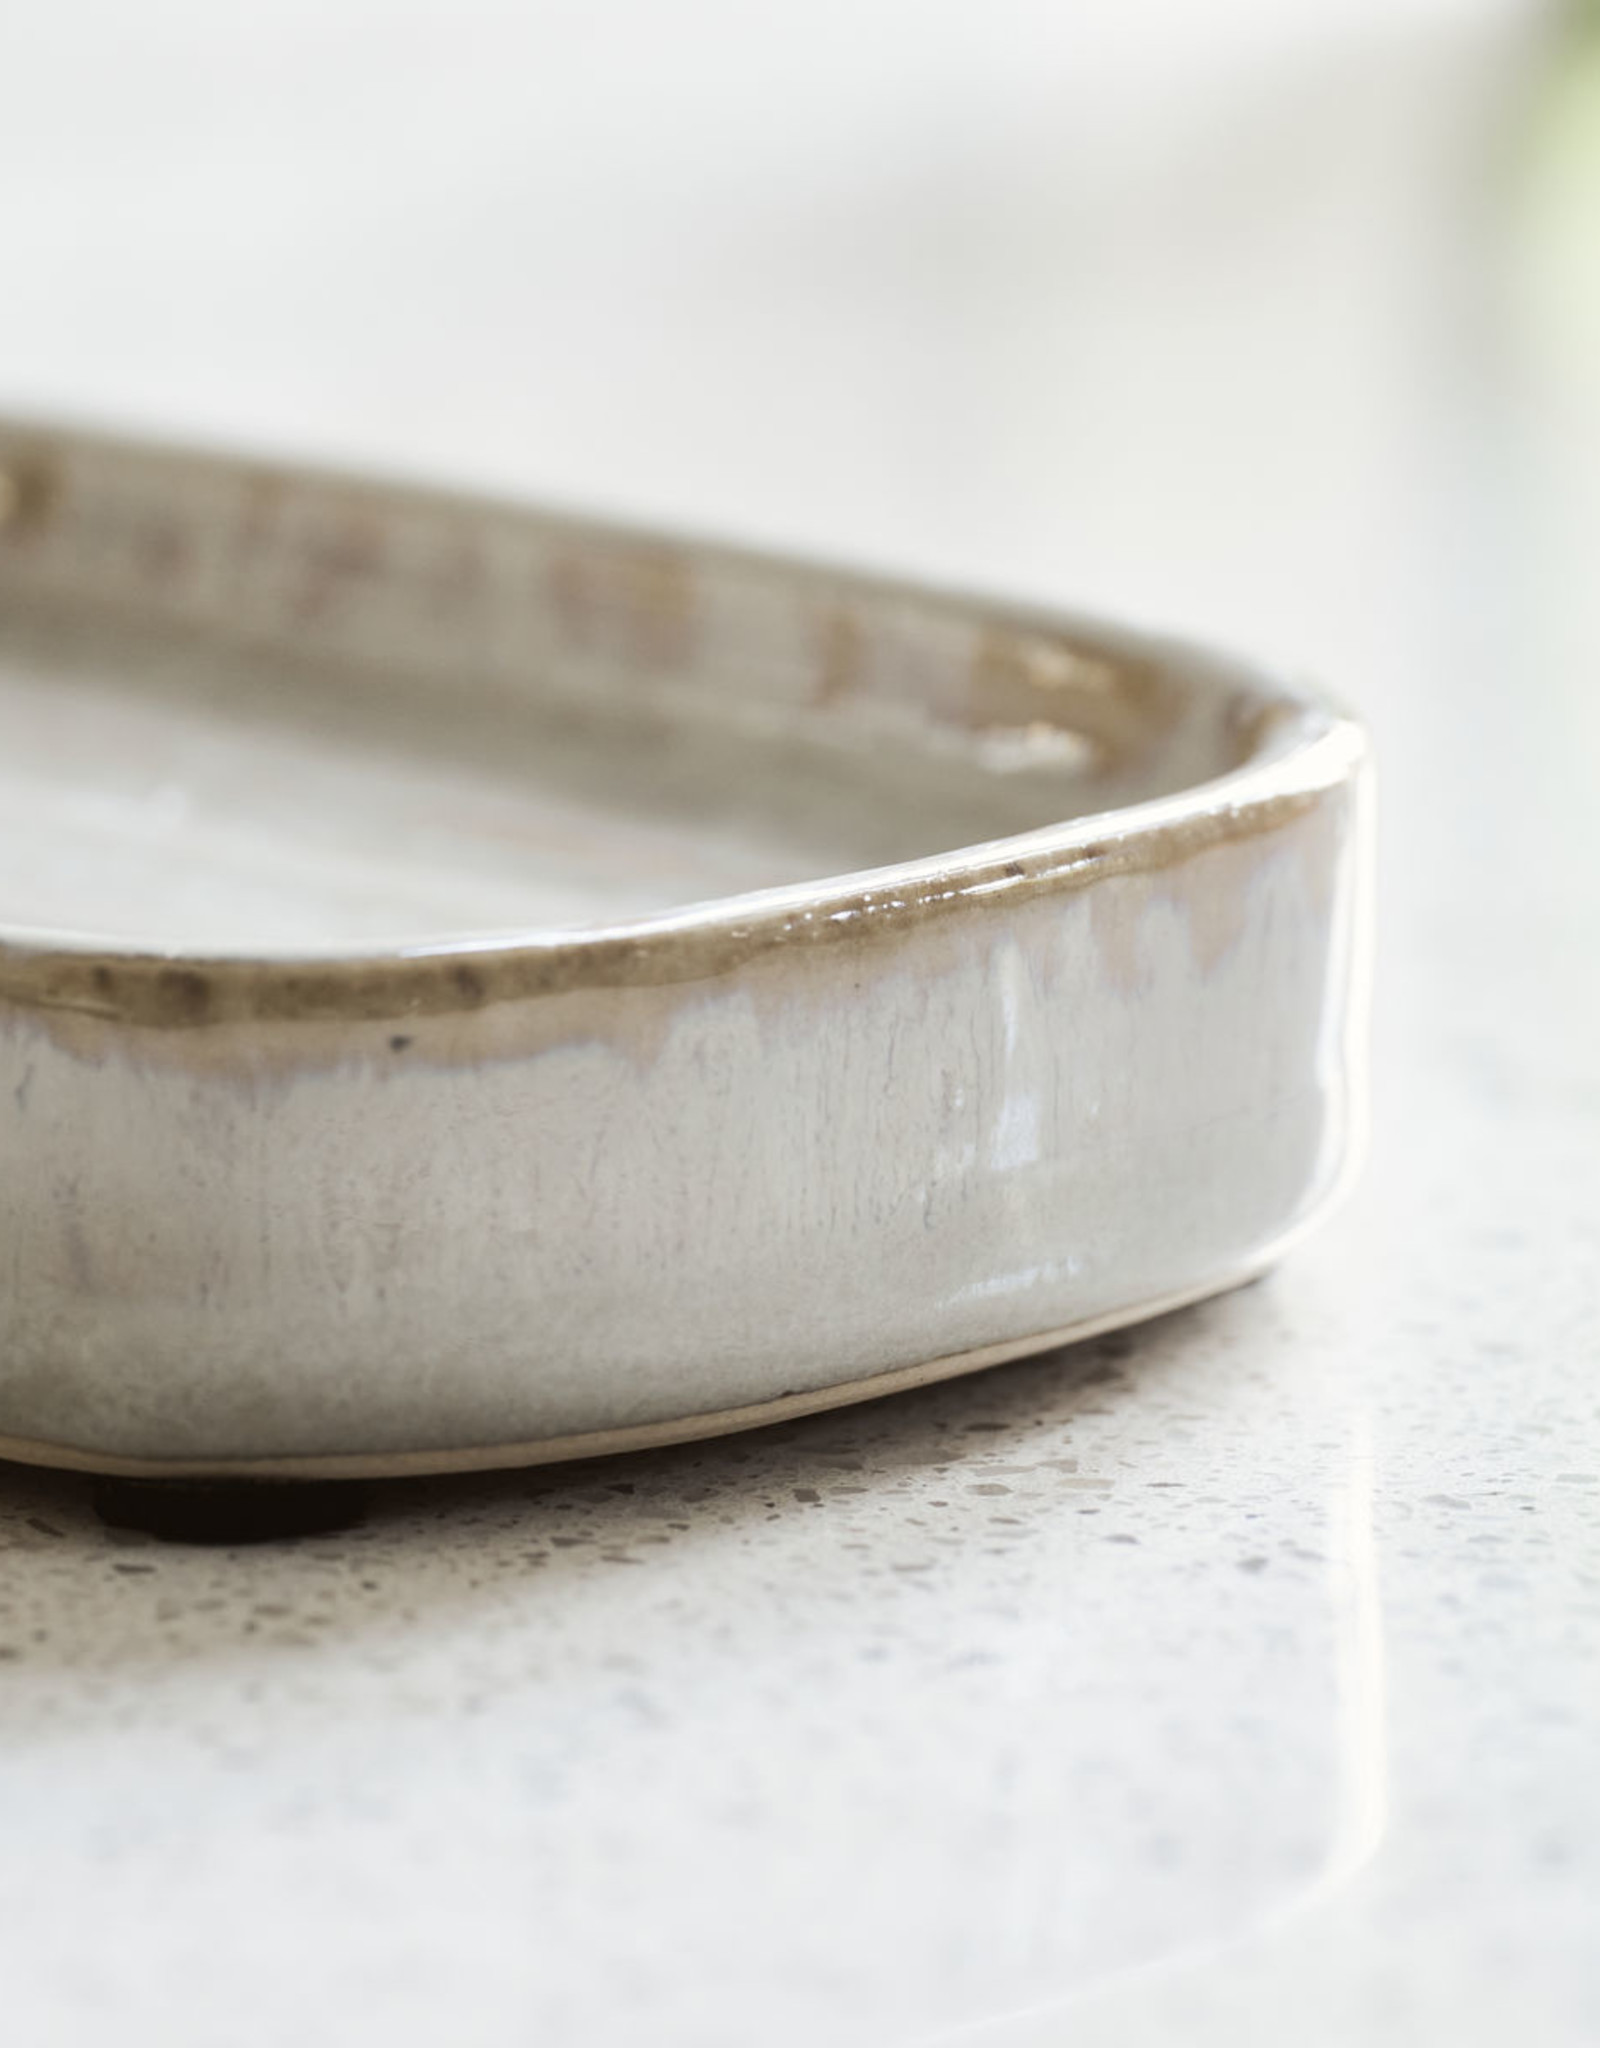 Meraki soapdish 'Datura' - glazed earthenware